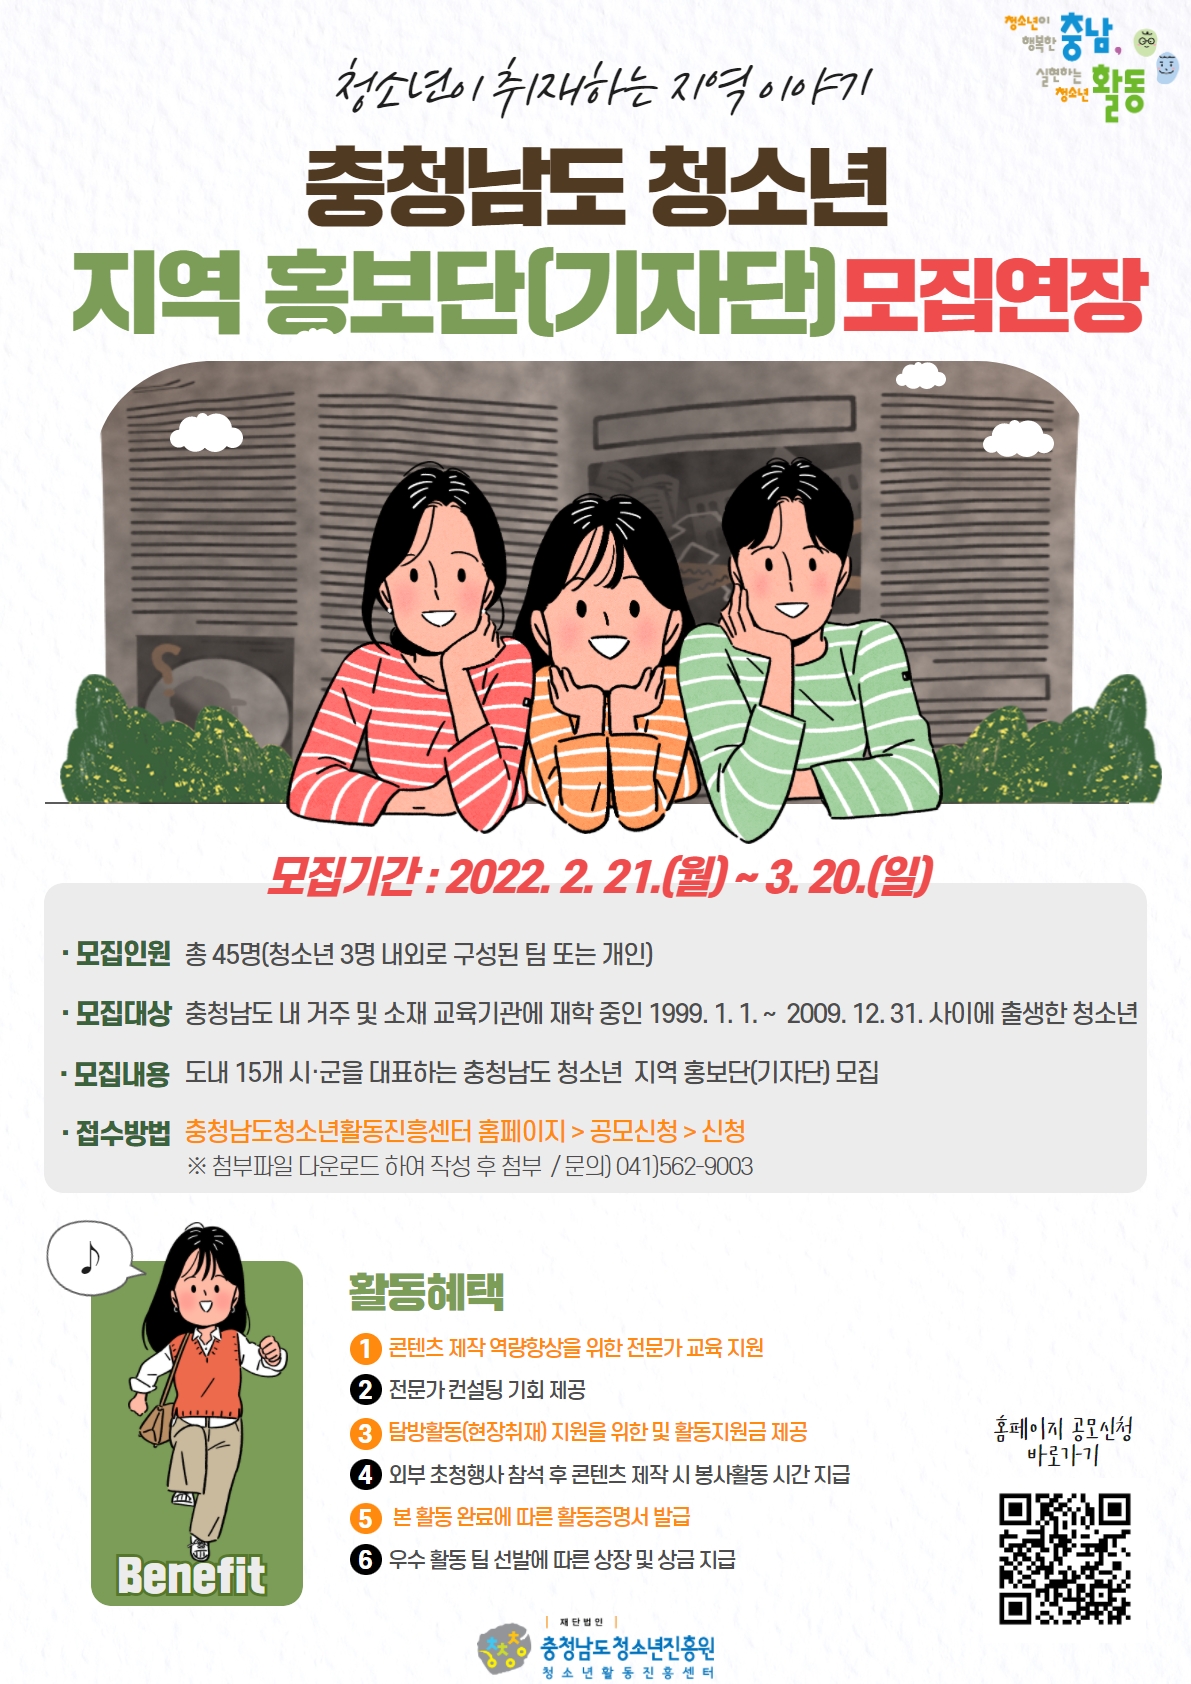 [안내] 2022 충청남도 청소년 지역 홍보단(기자단) 모집 연장 안내